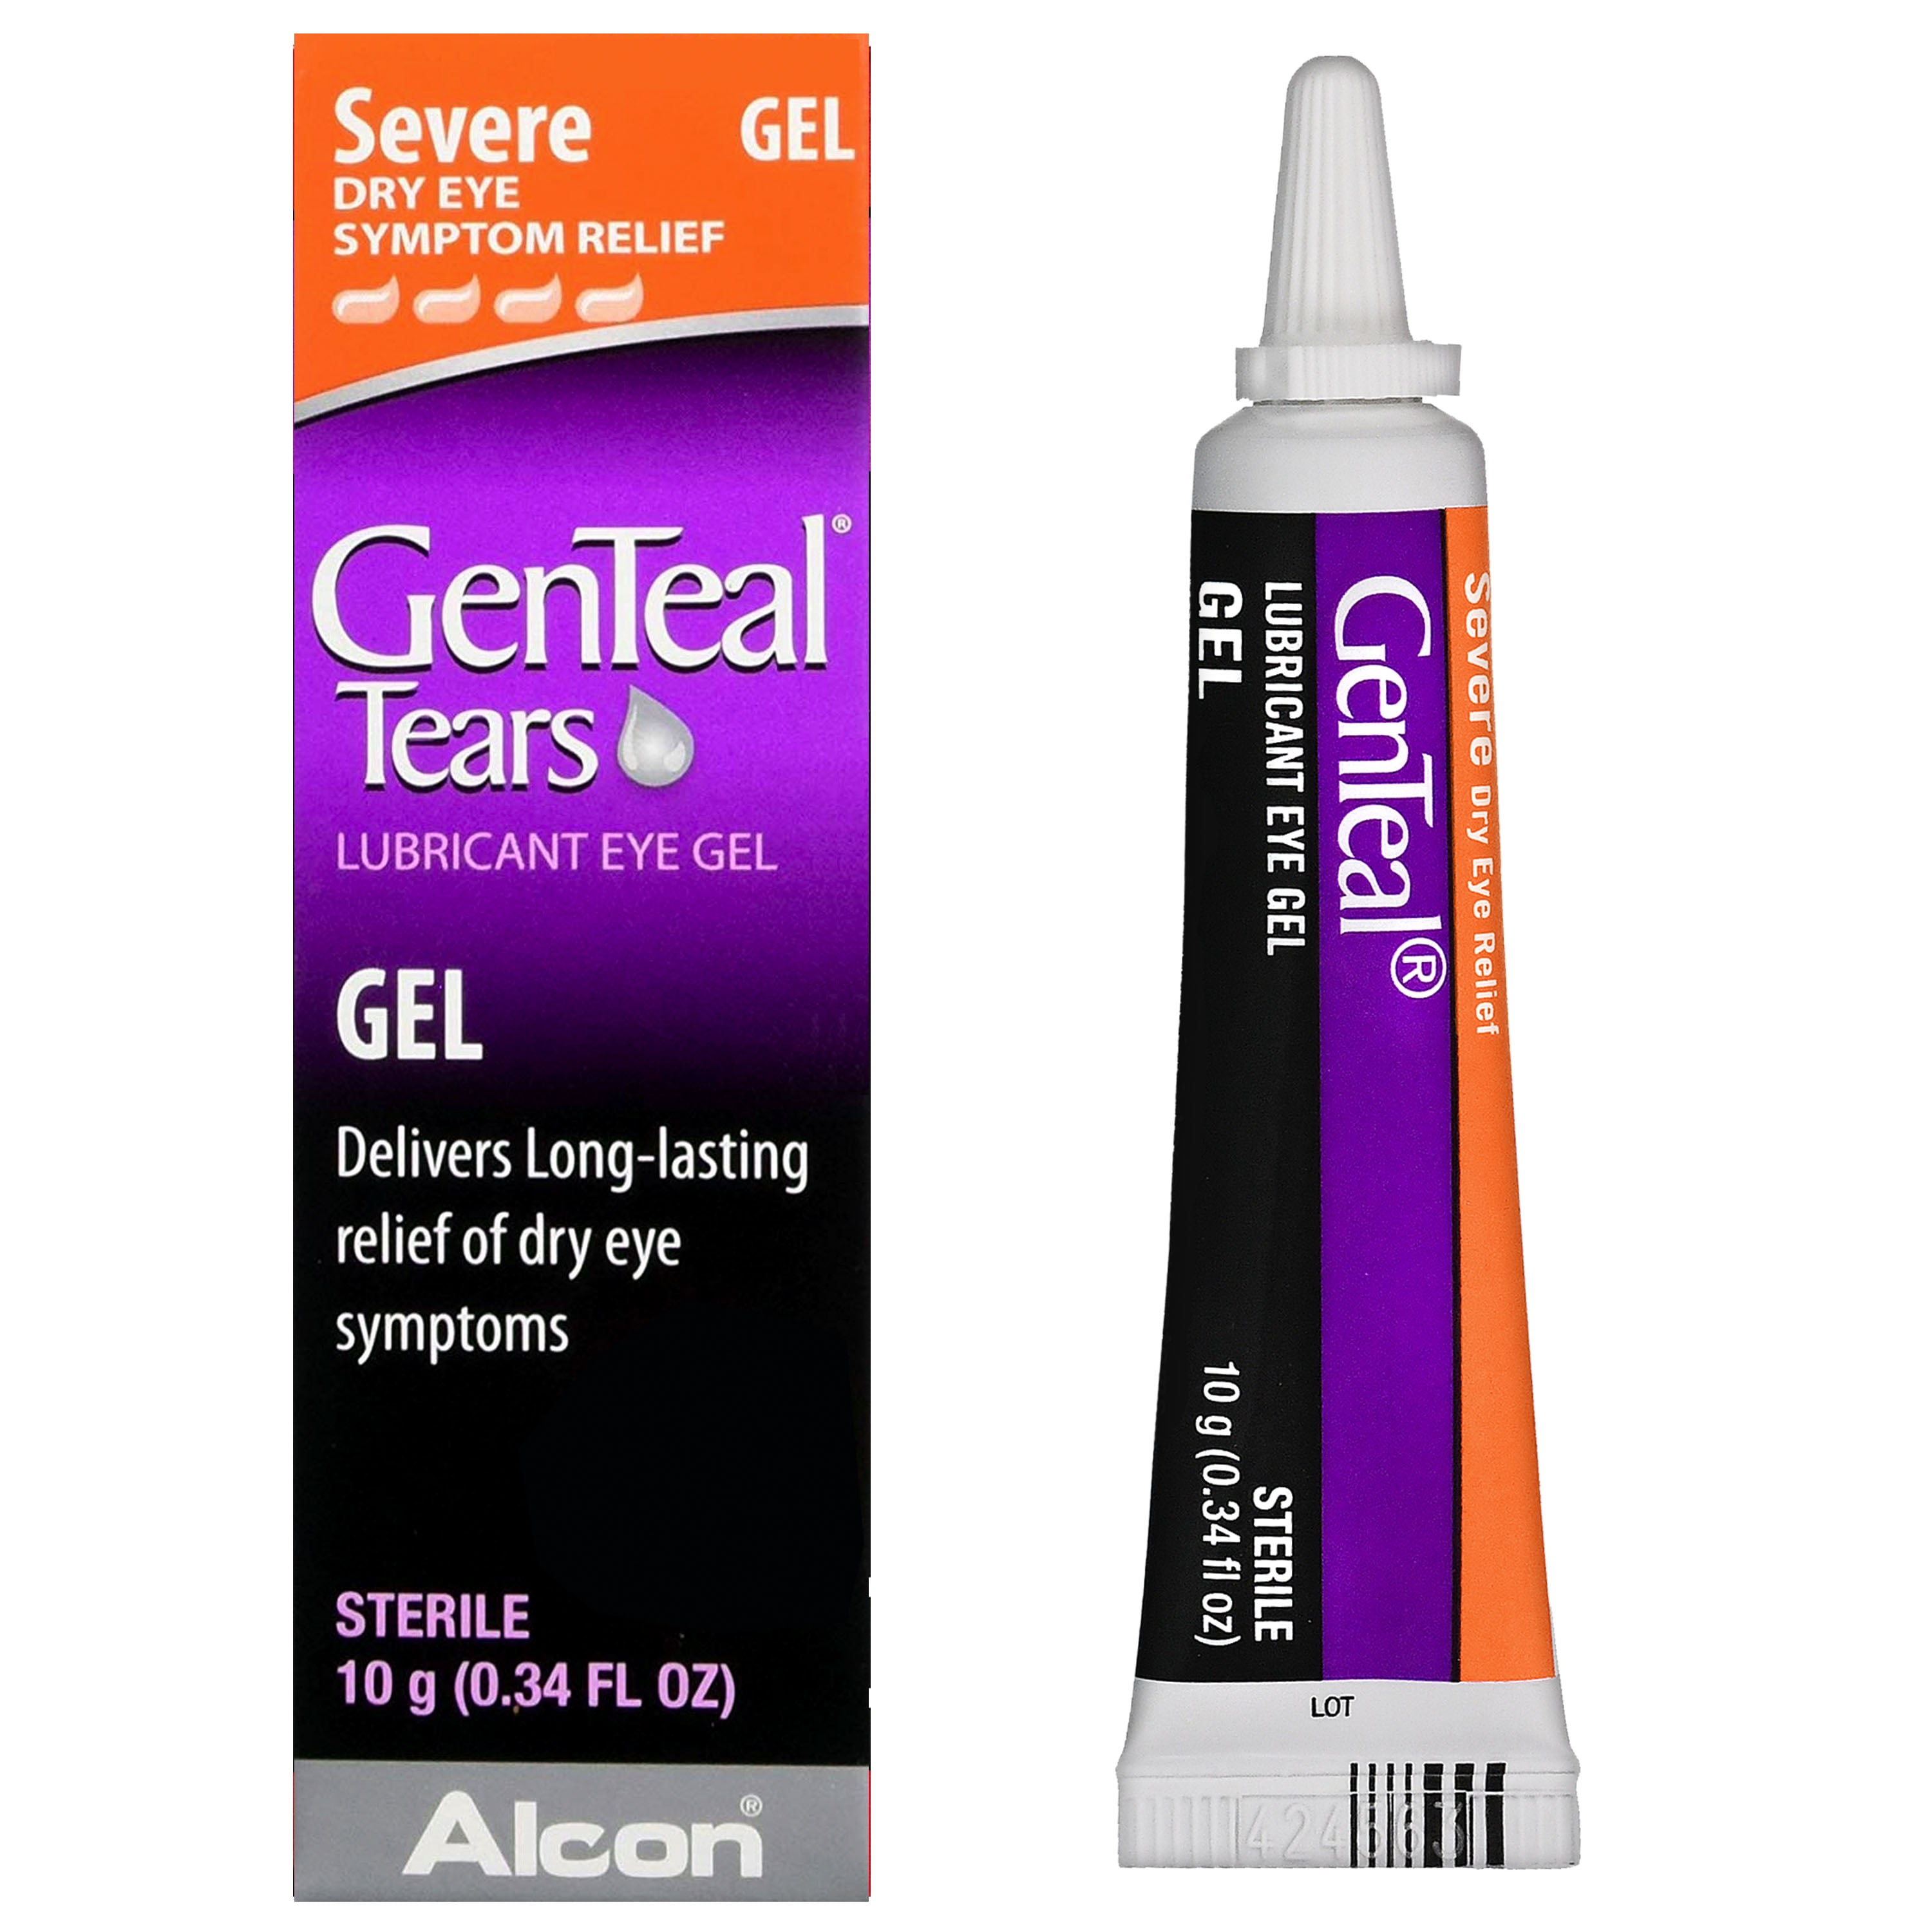 GenTeal Tears Lubricant Eye Gel for Severe Dry Eye Symptom Relief